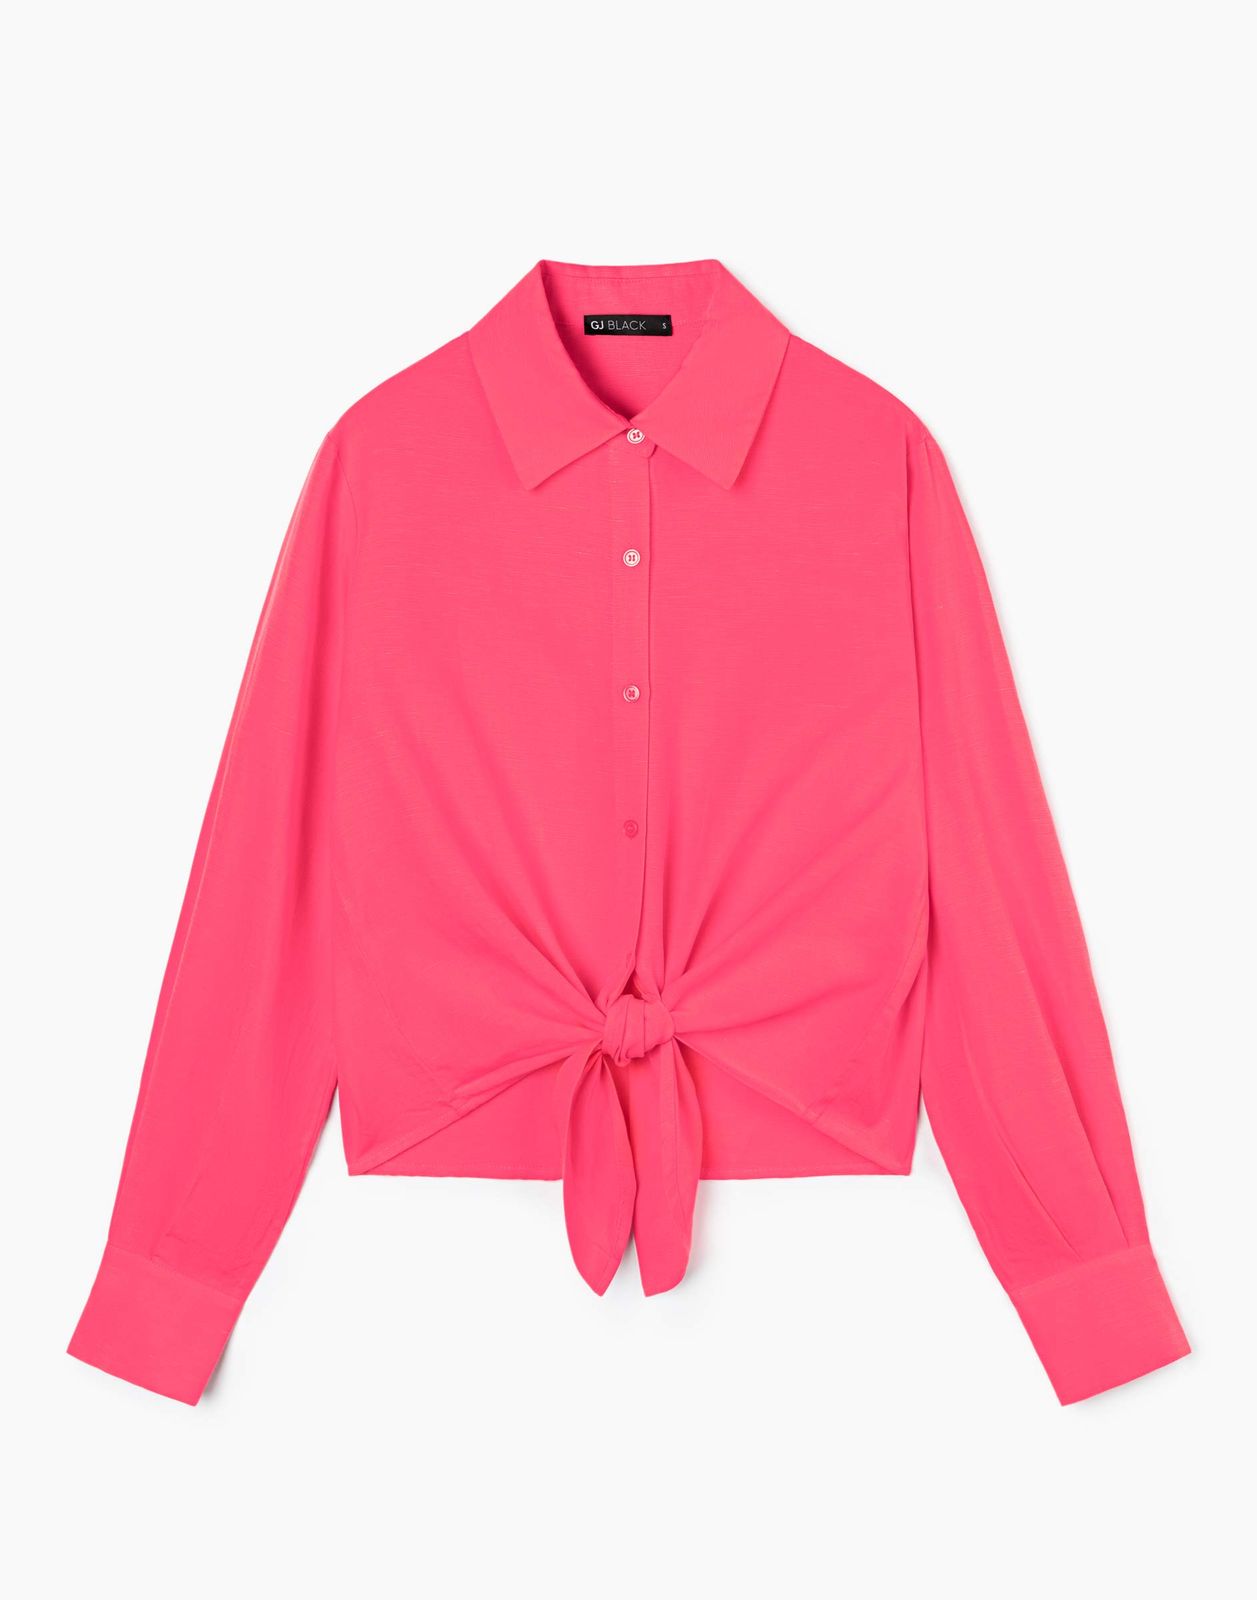 Рубашка женская Gloria Jeans GWT003566 розовый XXS/158